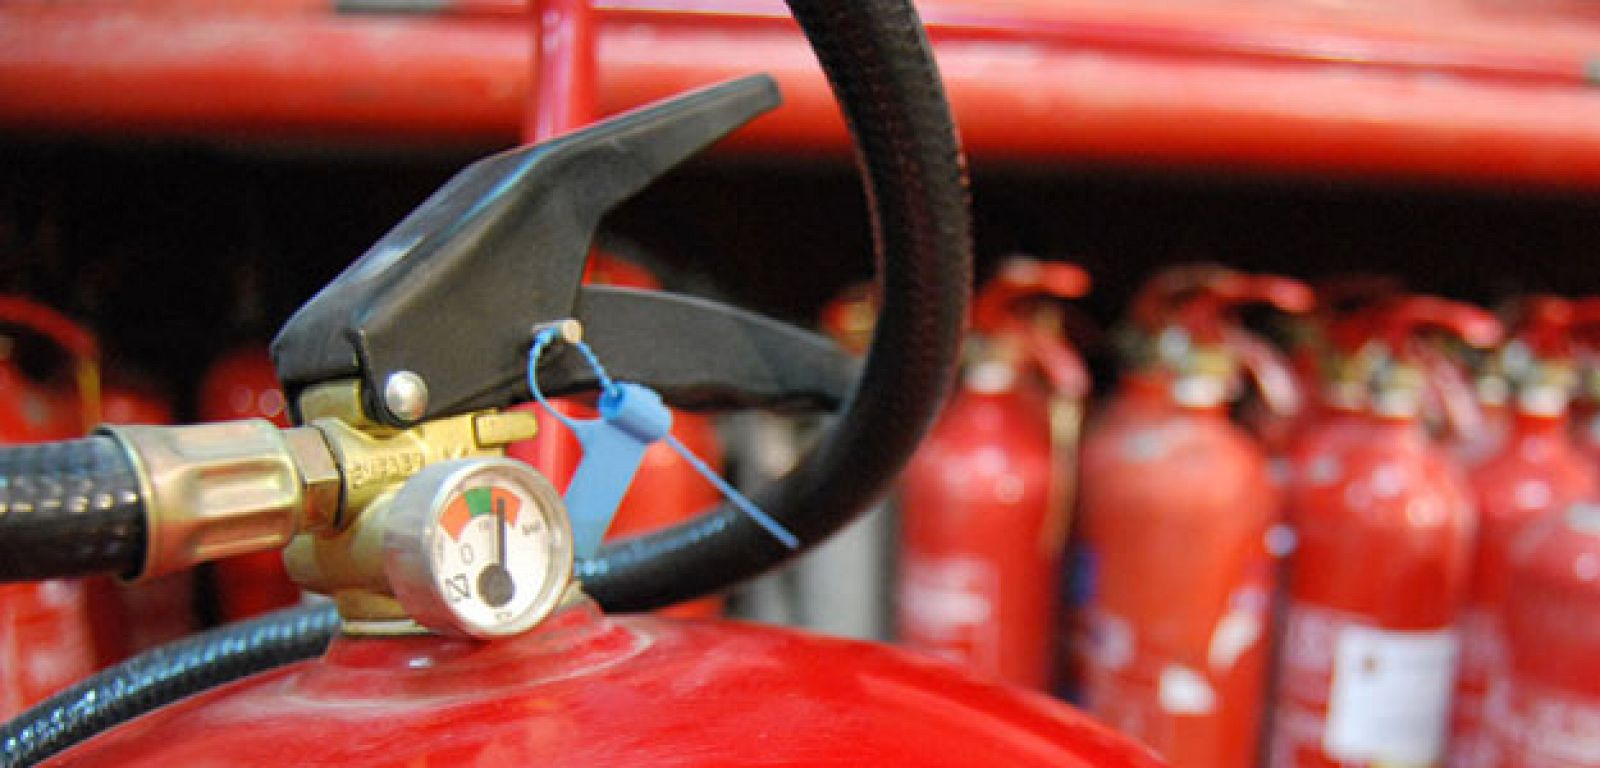 Extintores, una de las herramientas de protección contra incendios